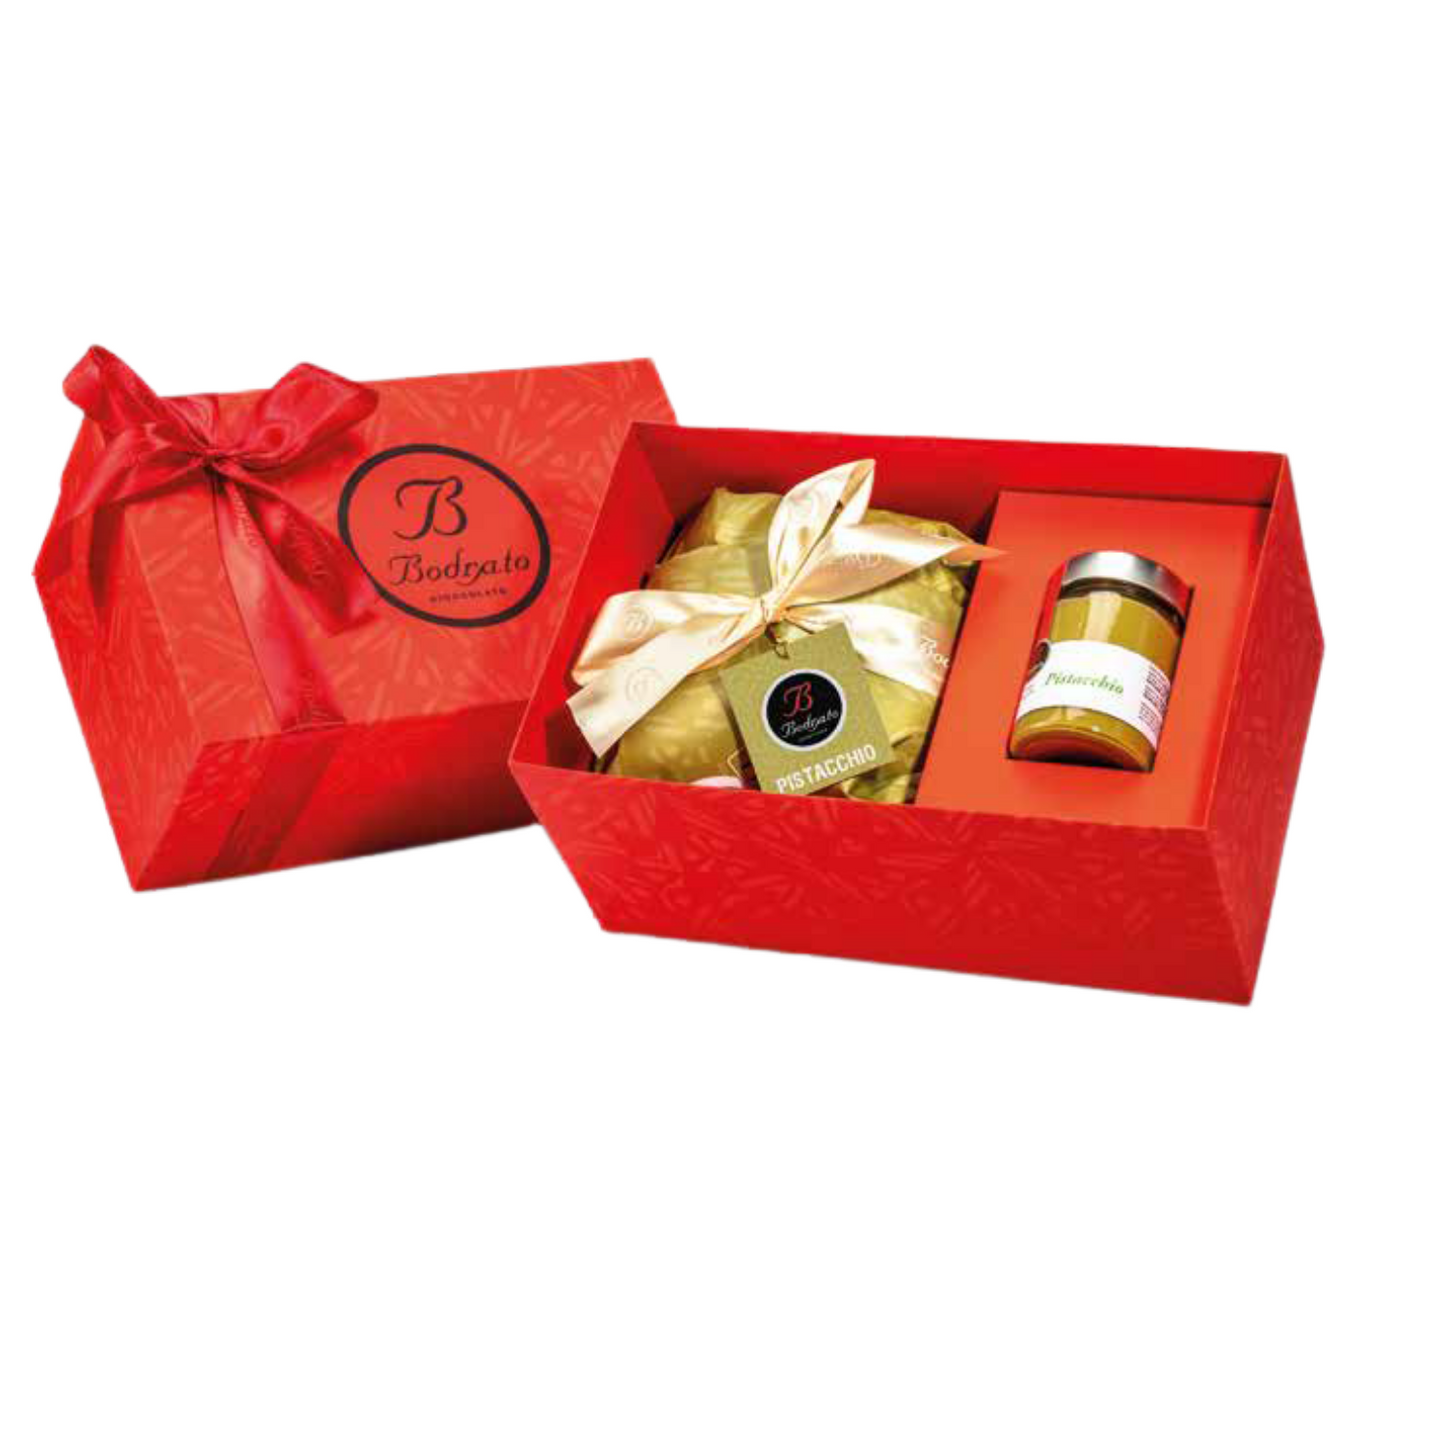 Panettone pistacchio 800g + crema “Pistacchio” 320g - GIFT BOX